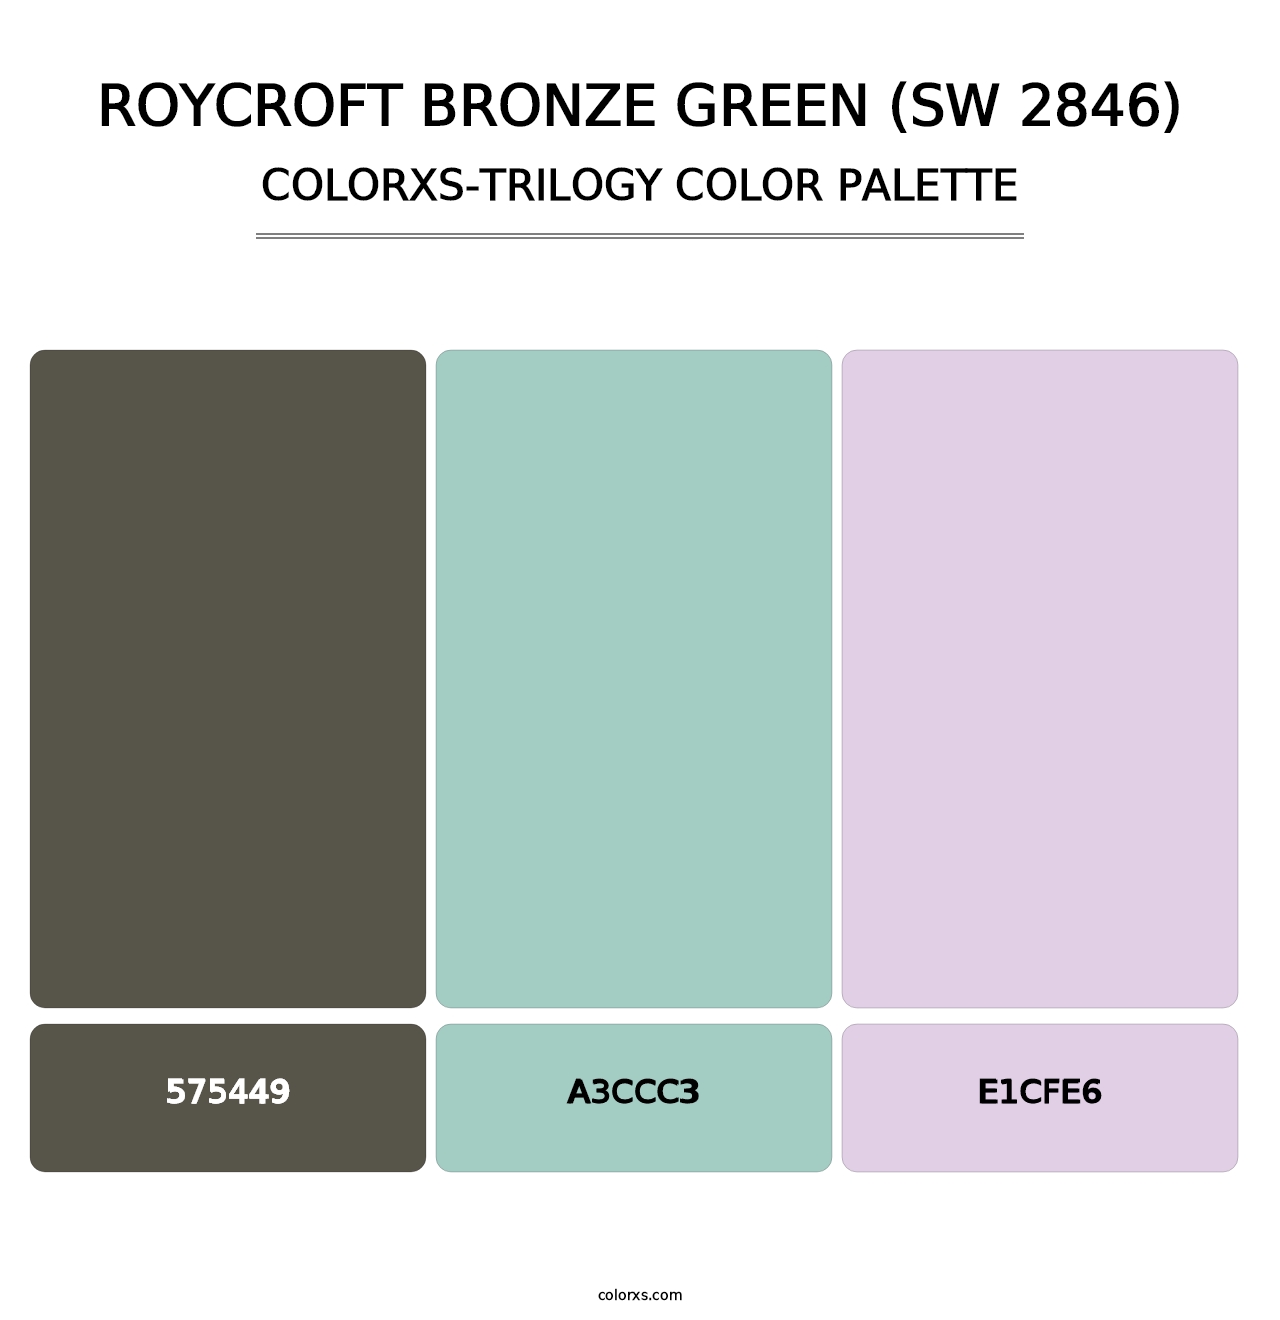 Roycroft Bronze Green (SW 2846) - Colorxs Trilogy Palette